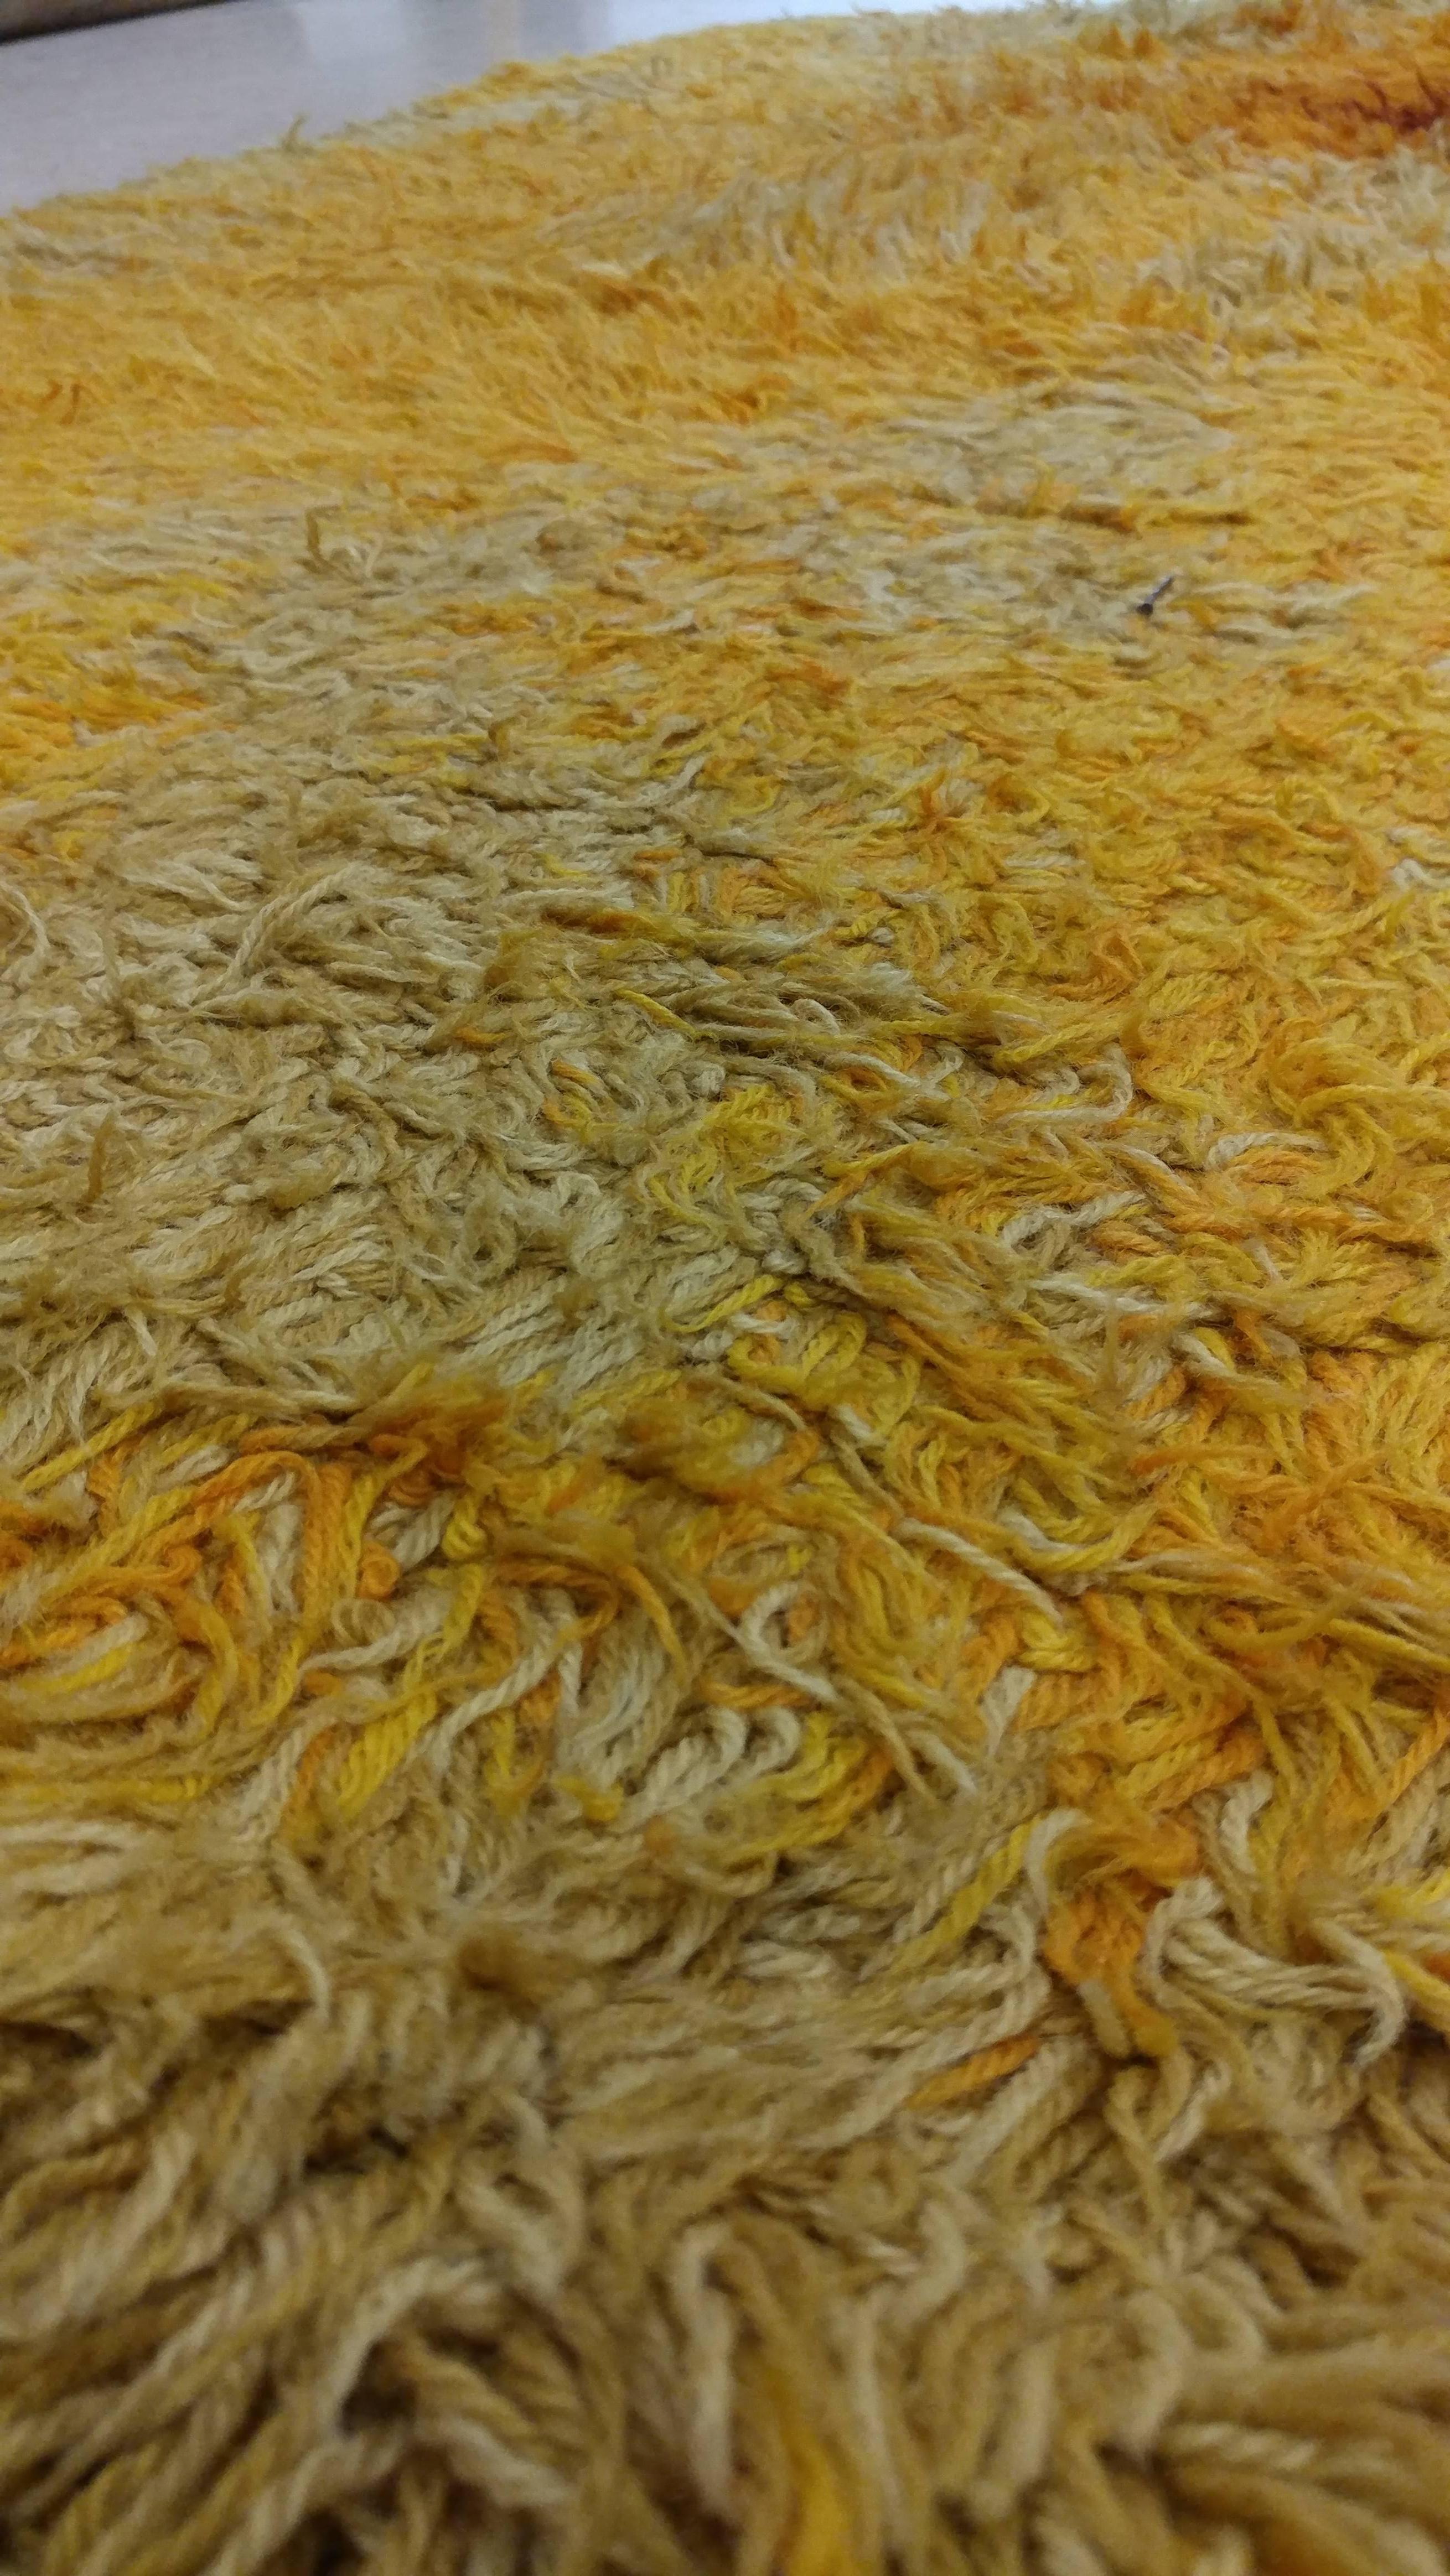 schwedischer Rya-Teppich aus den 1960er Jahren mit einem farbenfrohen, plüschigen Wollflor. Der für diesen Teppich verwendete Flor ähnelt dem marokkanischer Teppiche